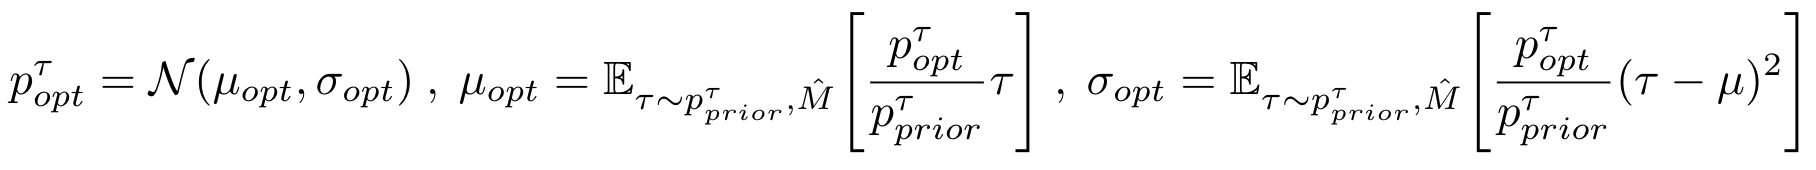 Method overview figure